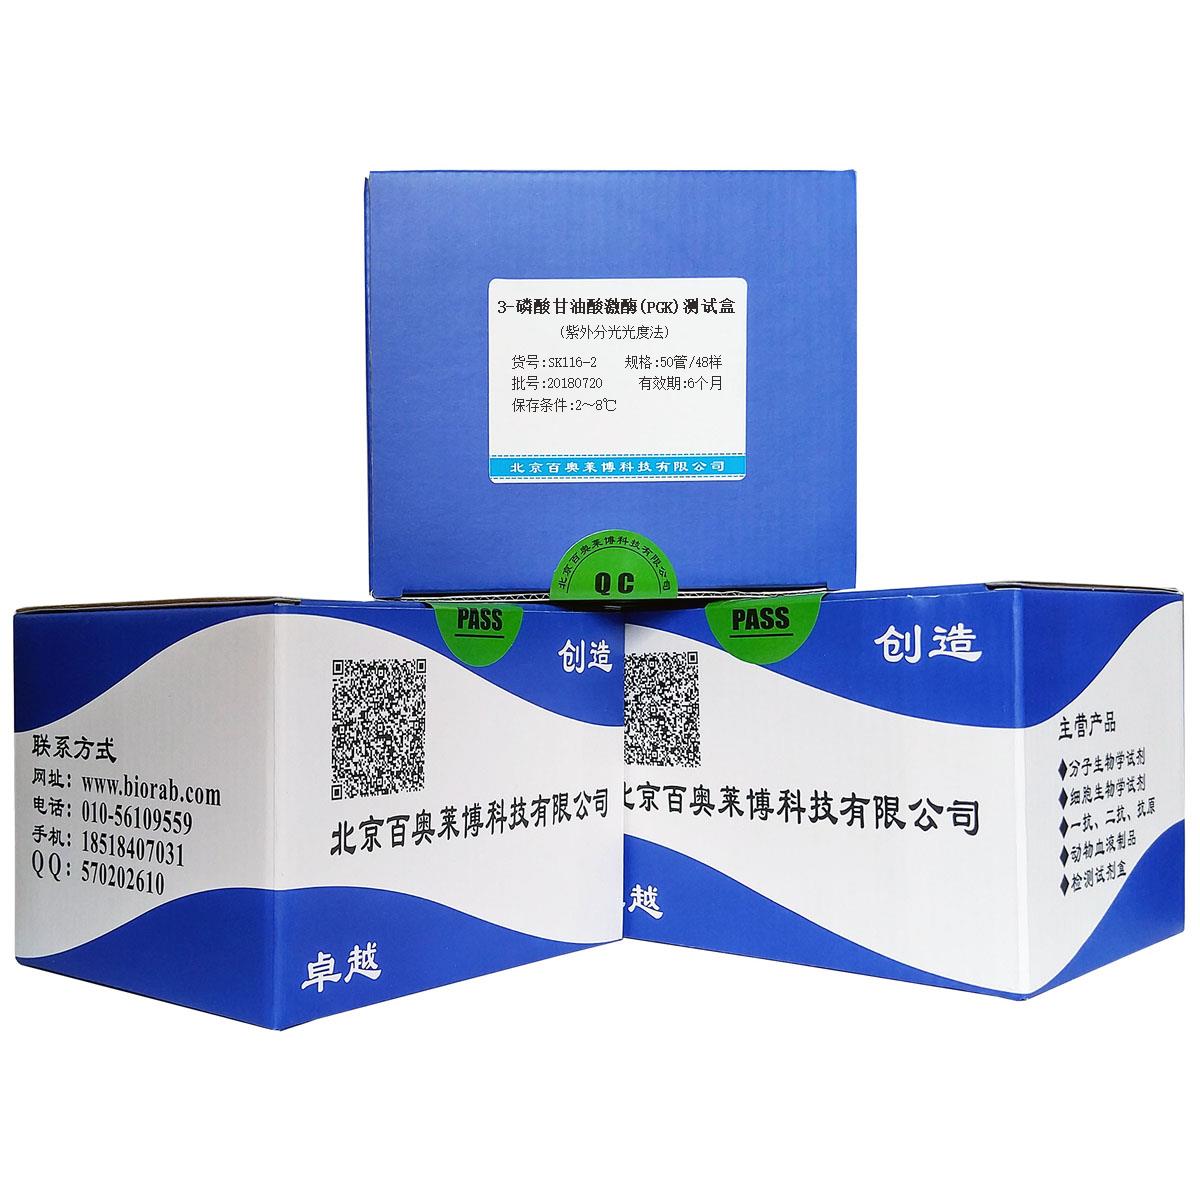 3-磷酸甘油酸激酶(PGK)测试盒(紫外分光光度法)